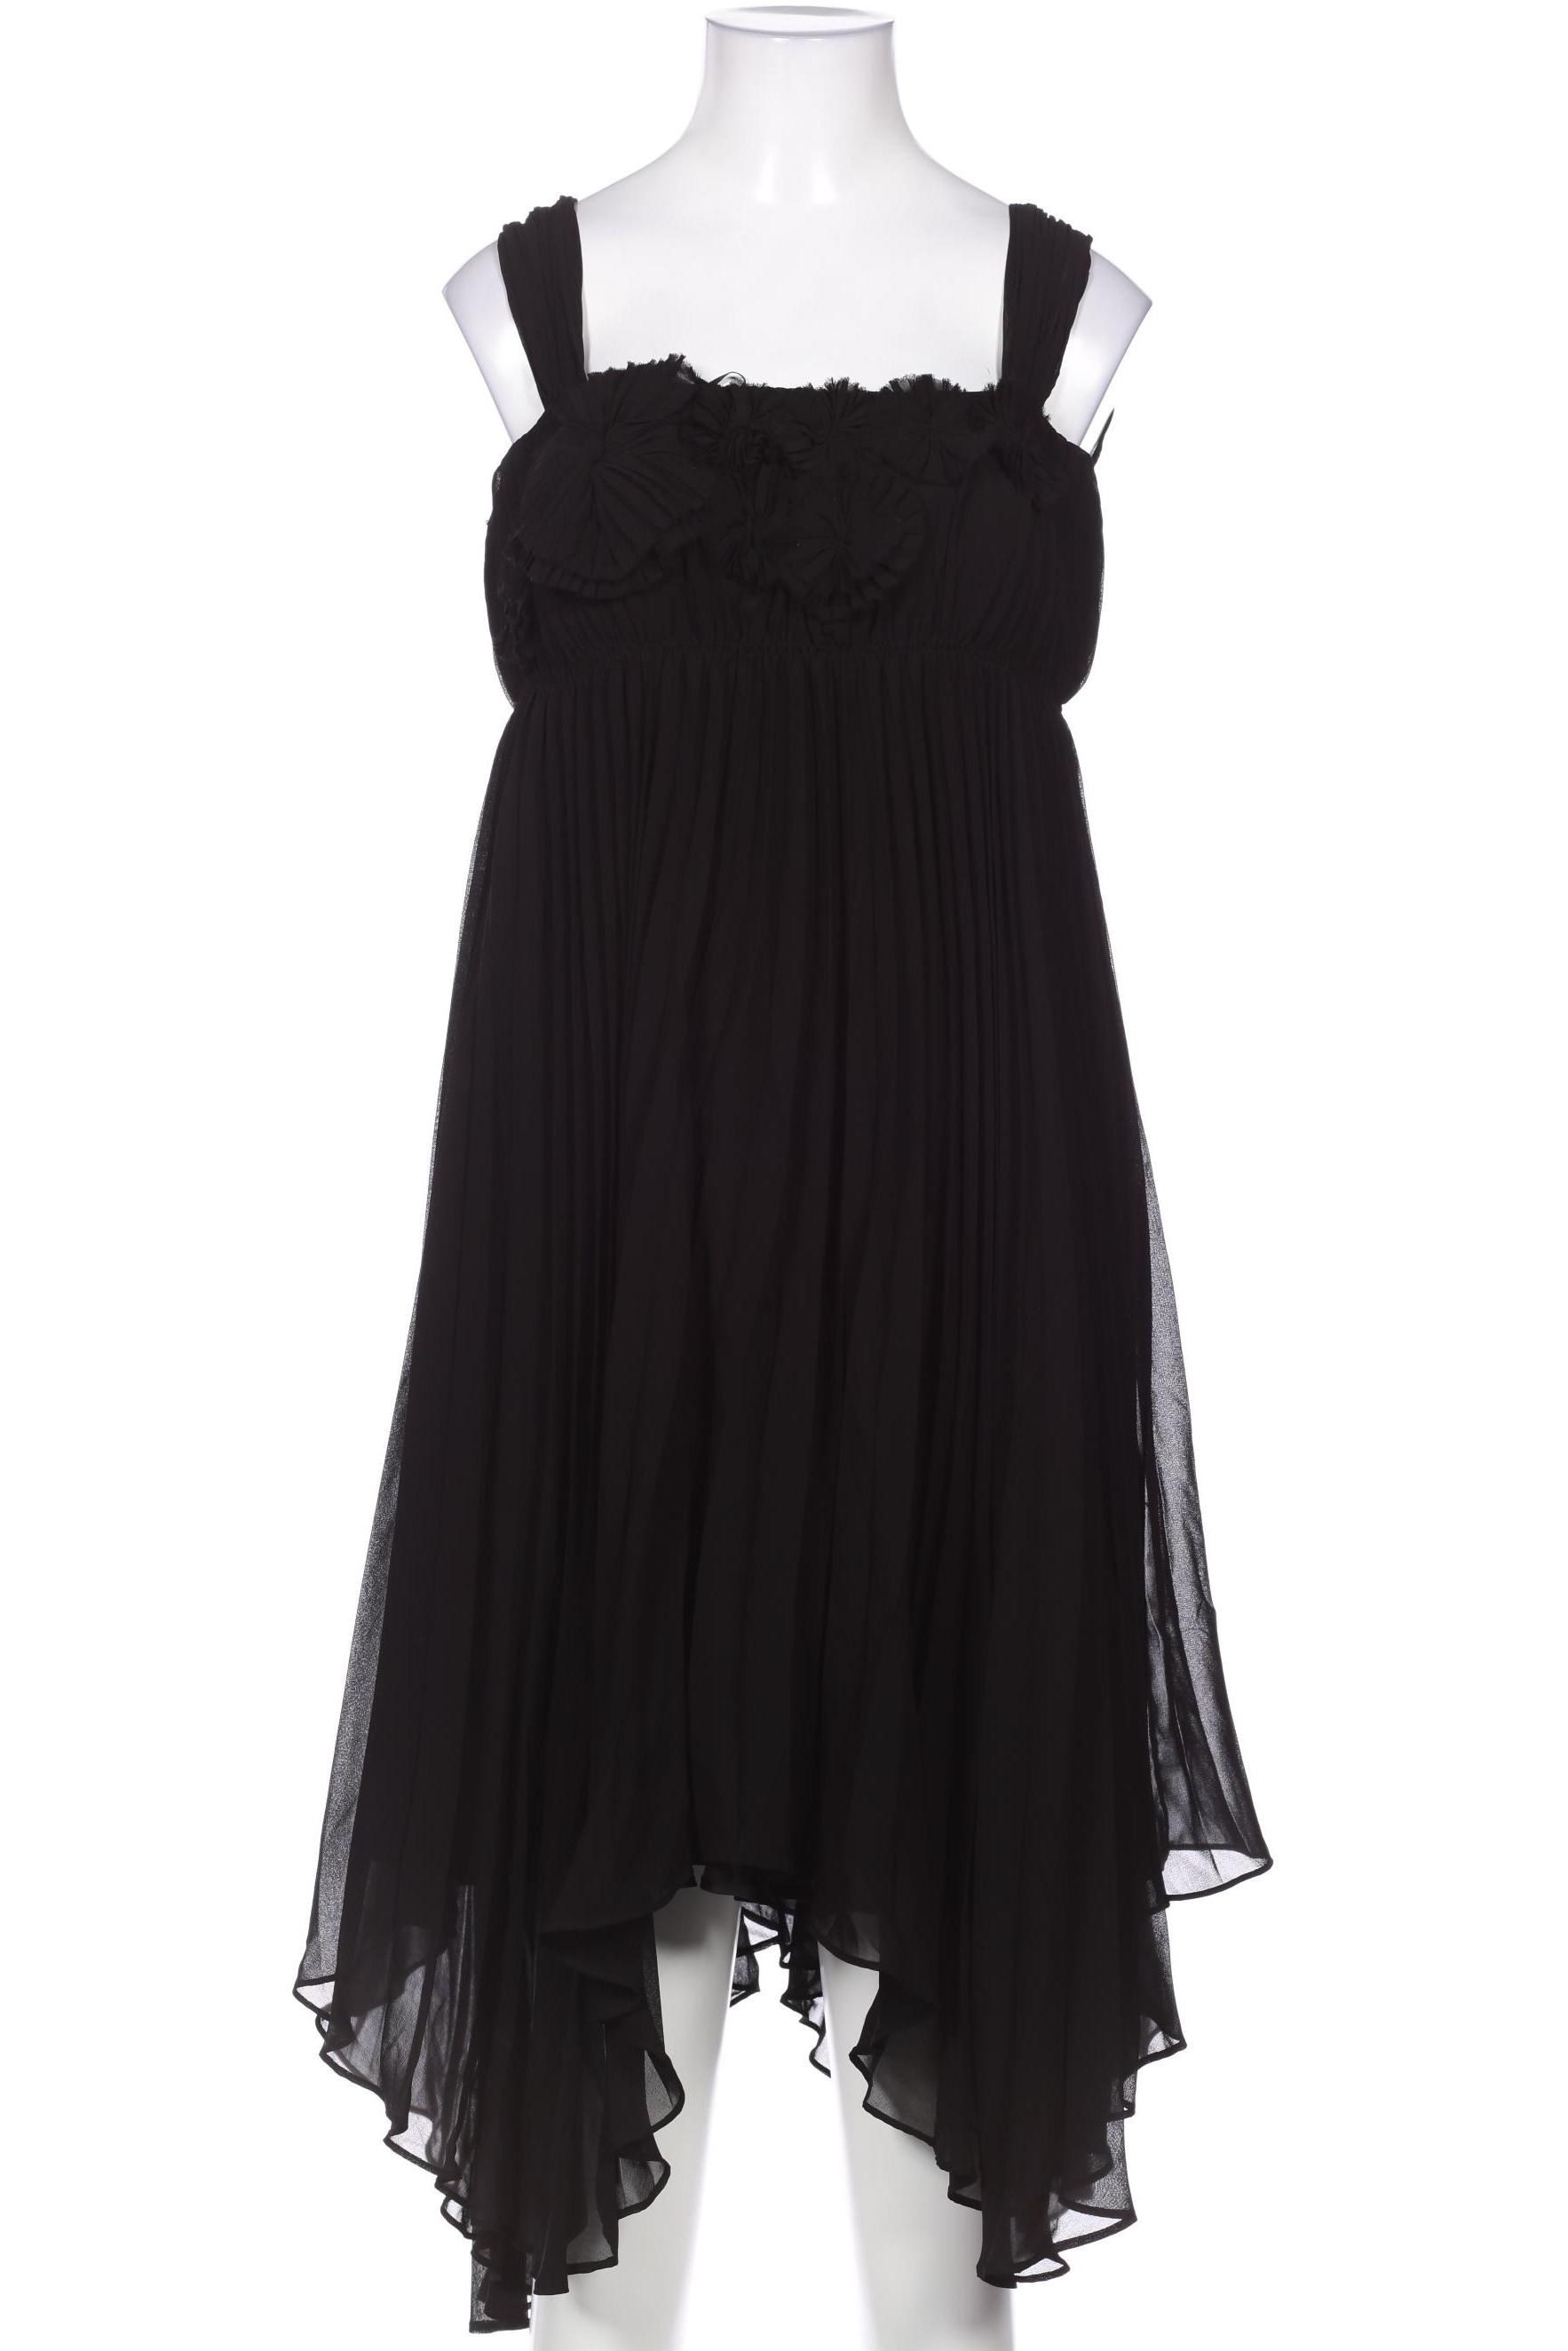 ZARA Damen Kleid, schwarz von ZARA